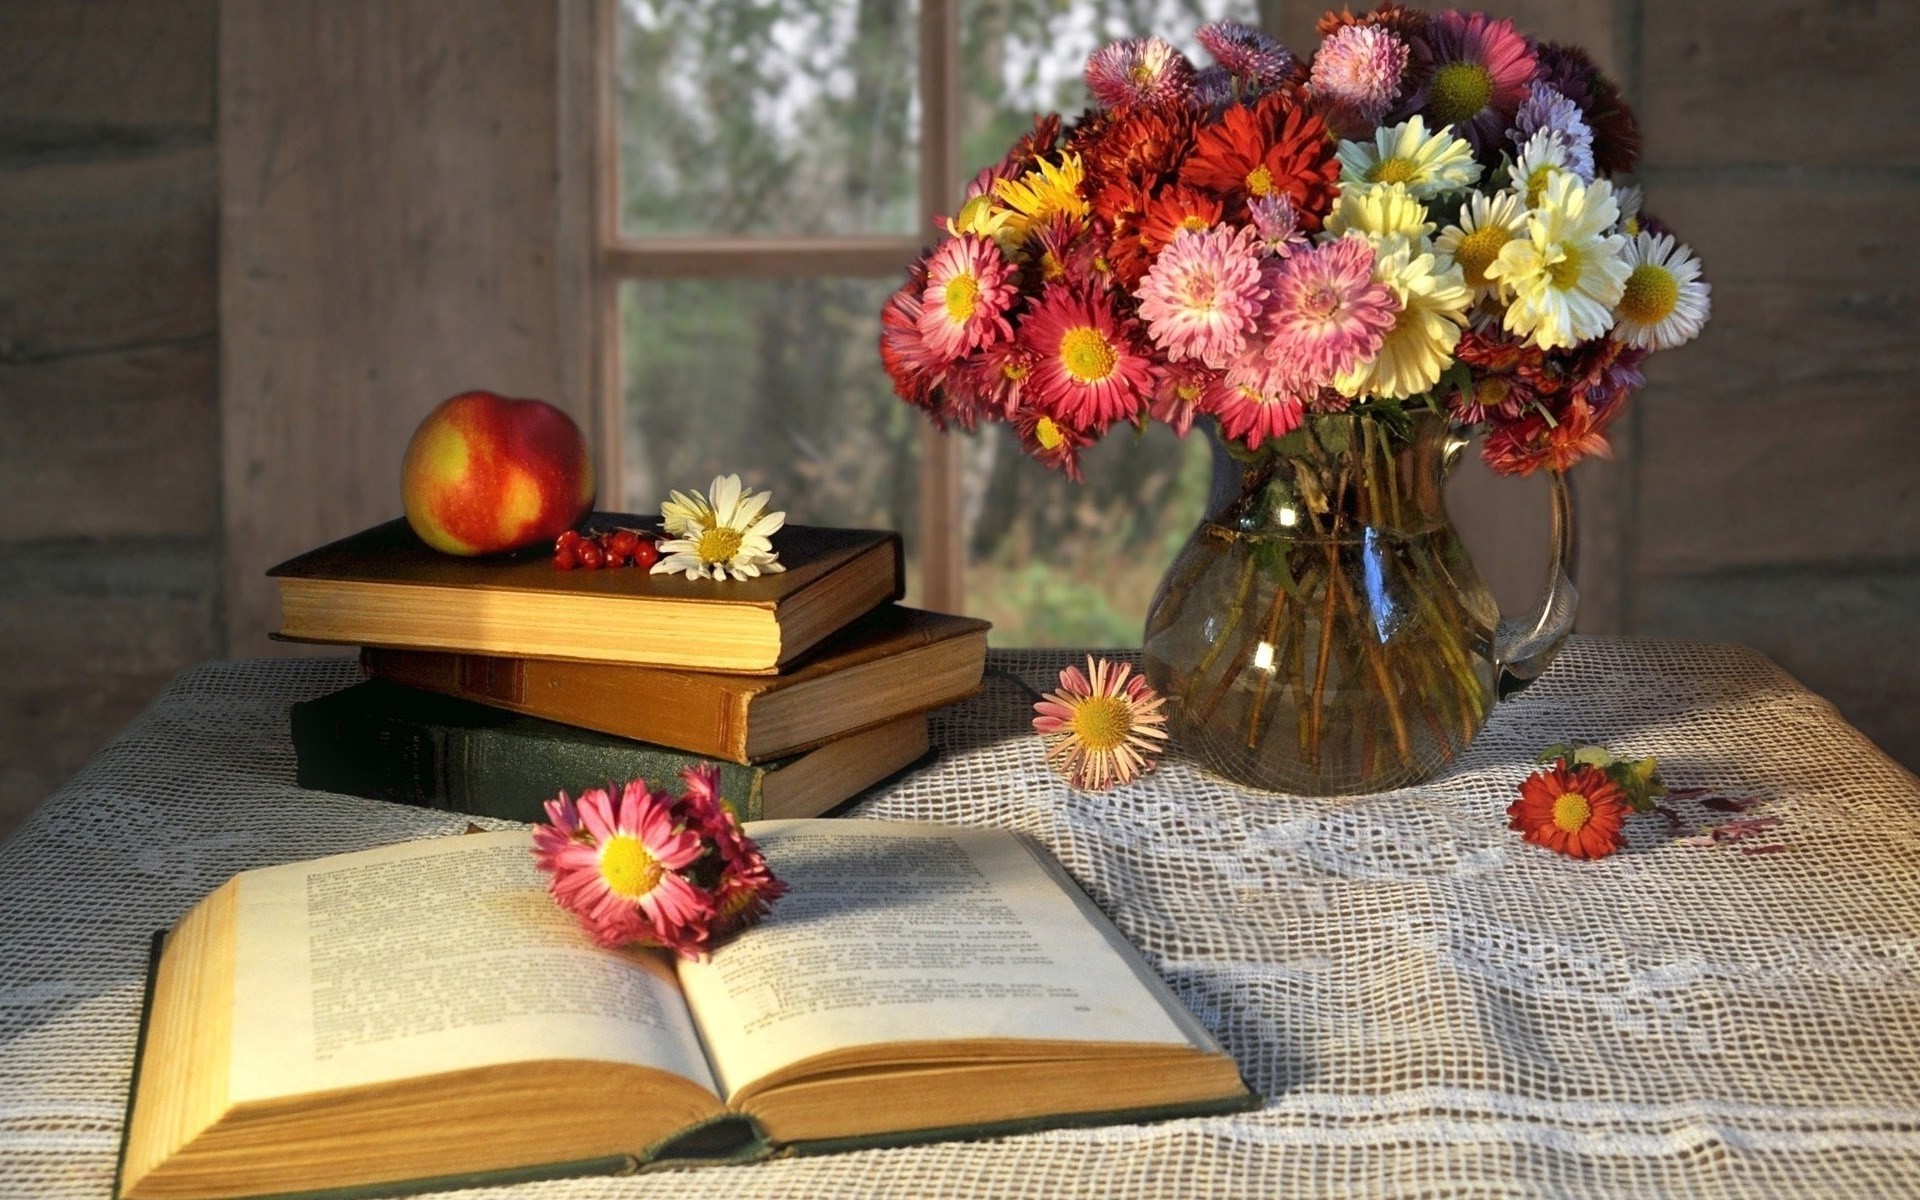 Apple Book Flower Pitcher Vase 1920x1200